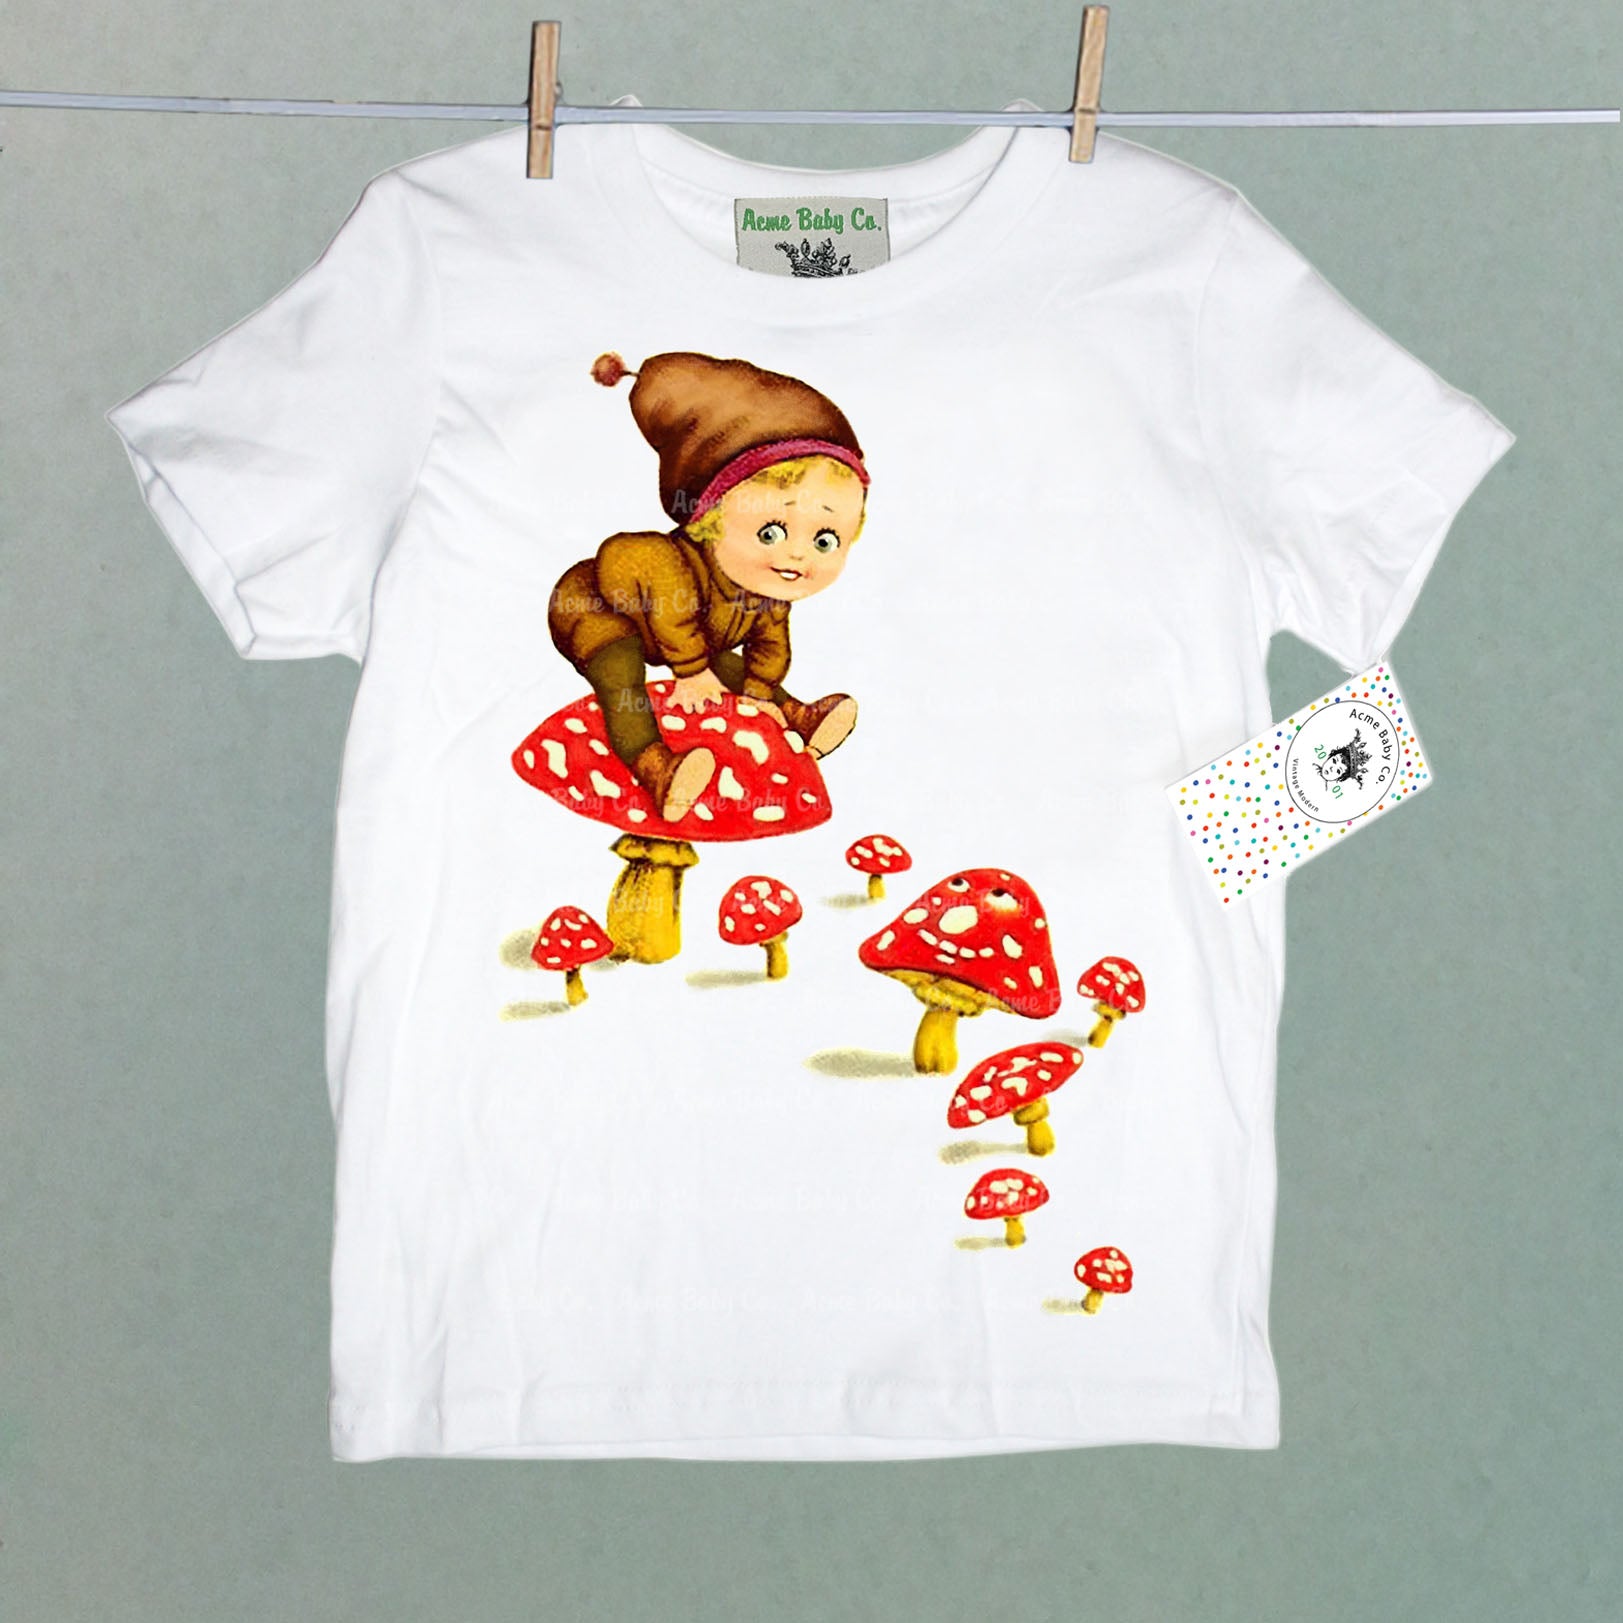 Mushroom Fairy Organic Baby Children's Shirt